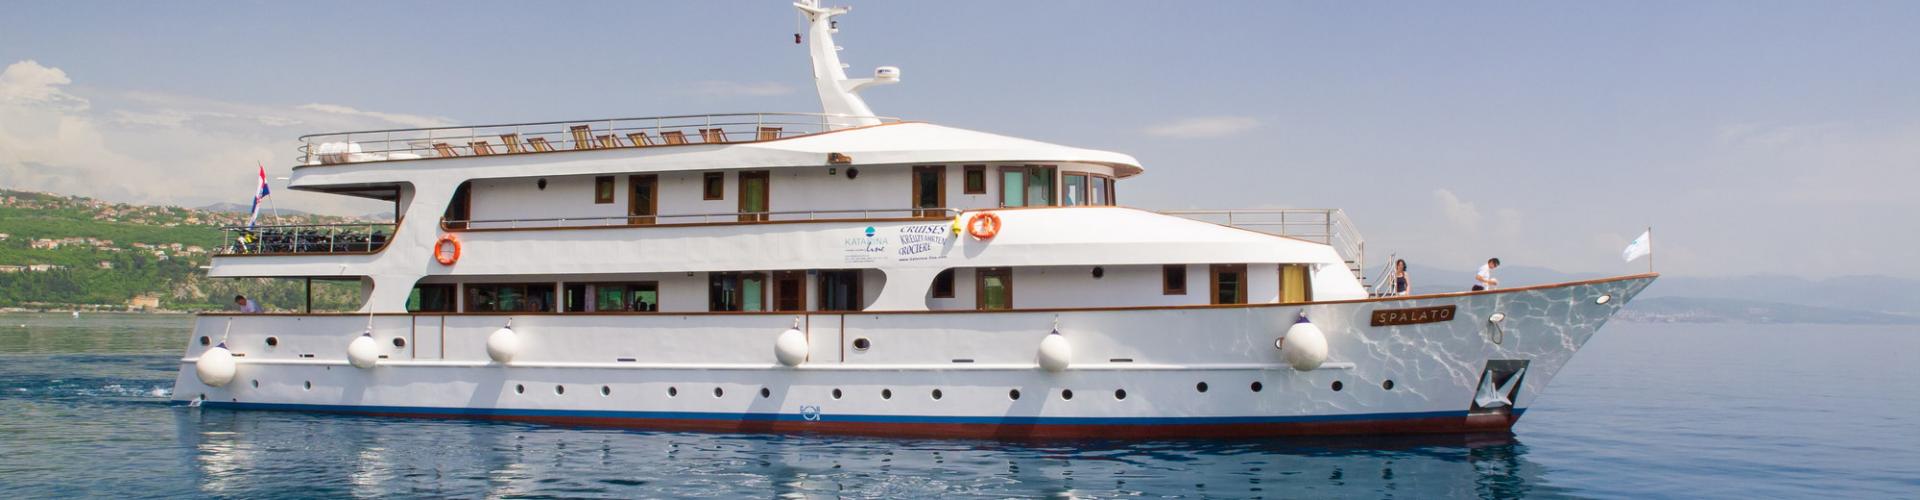 Premium Superior krydstogtskib MV Spalato- motoryacht